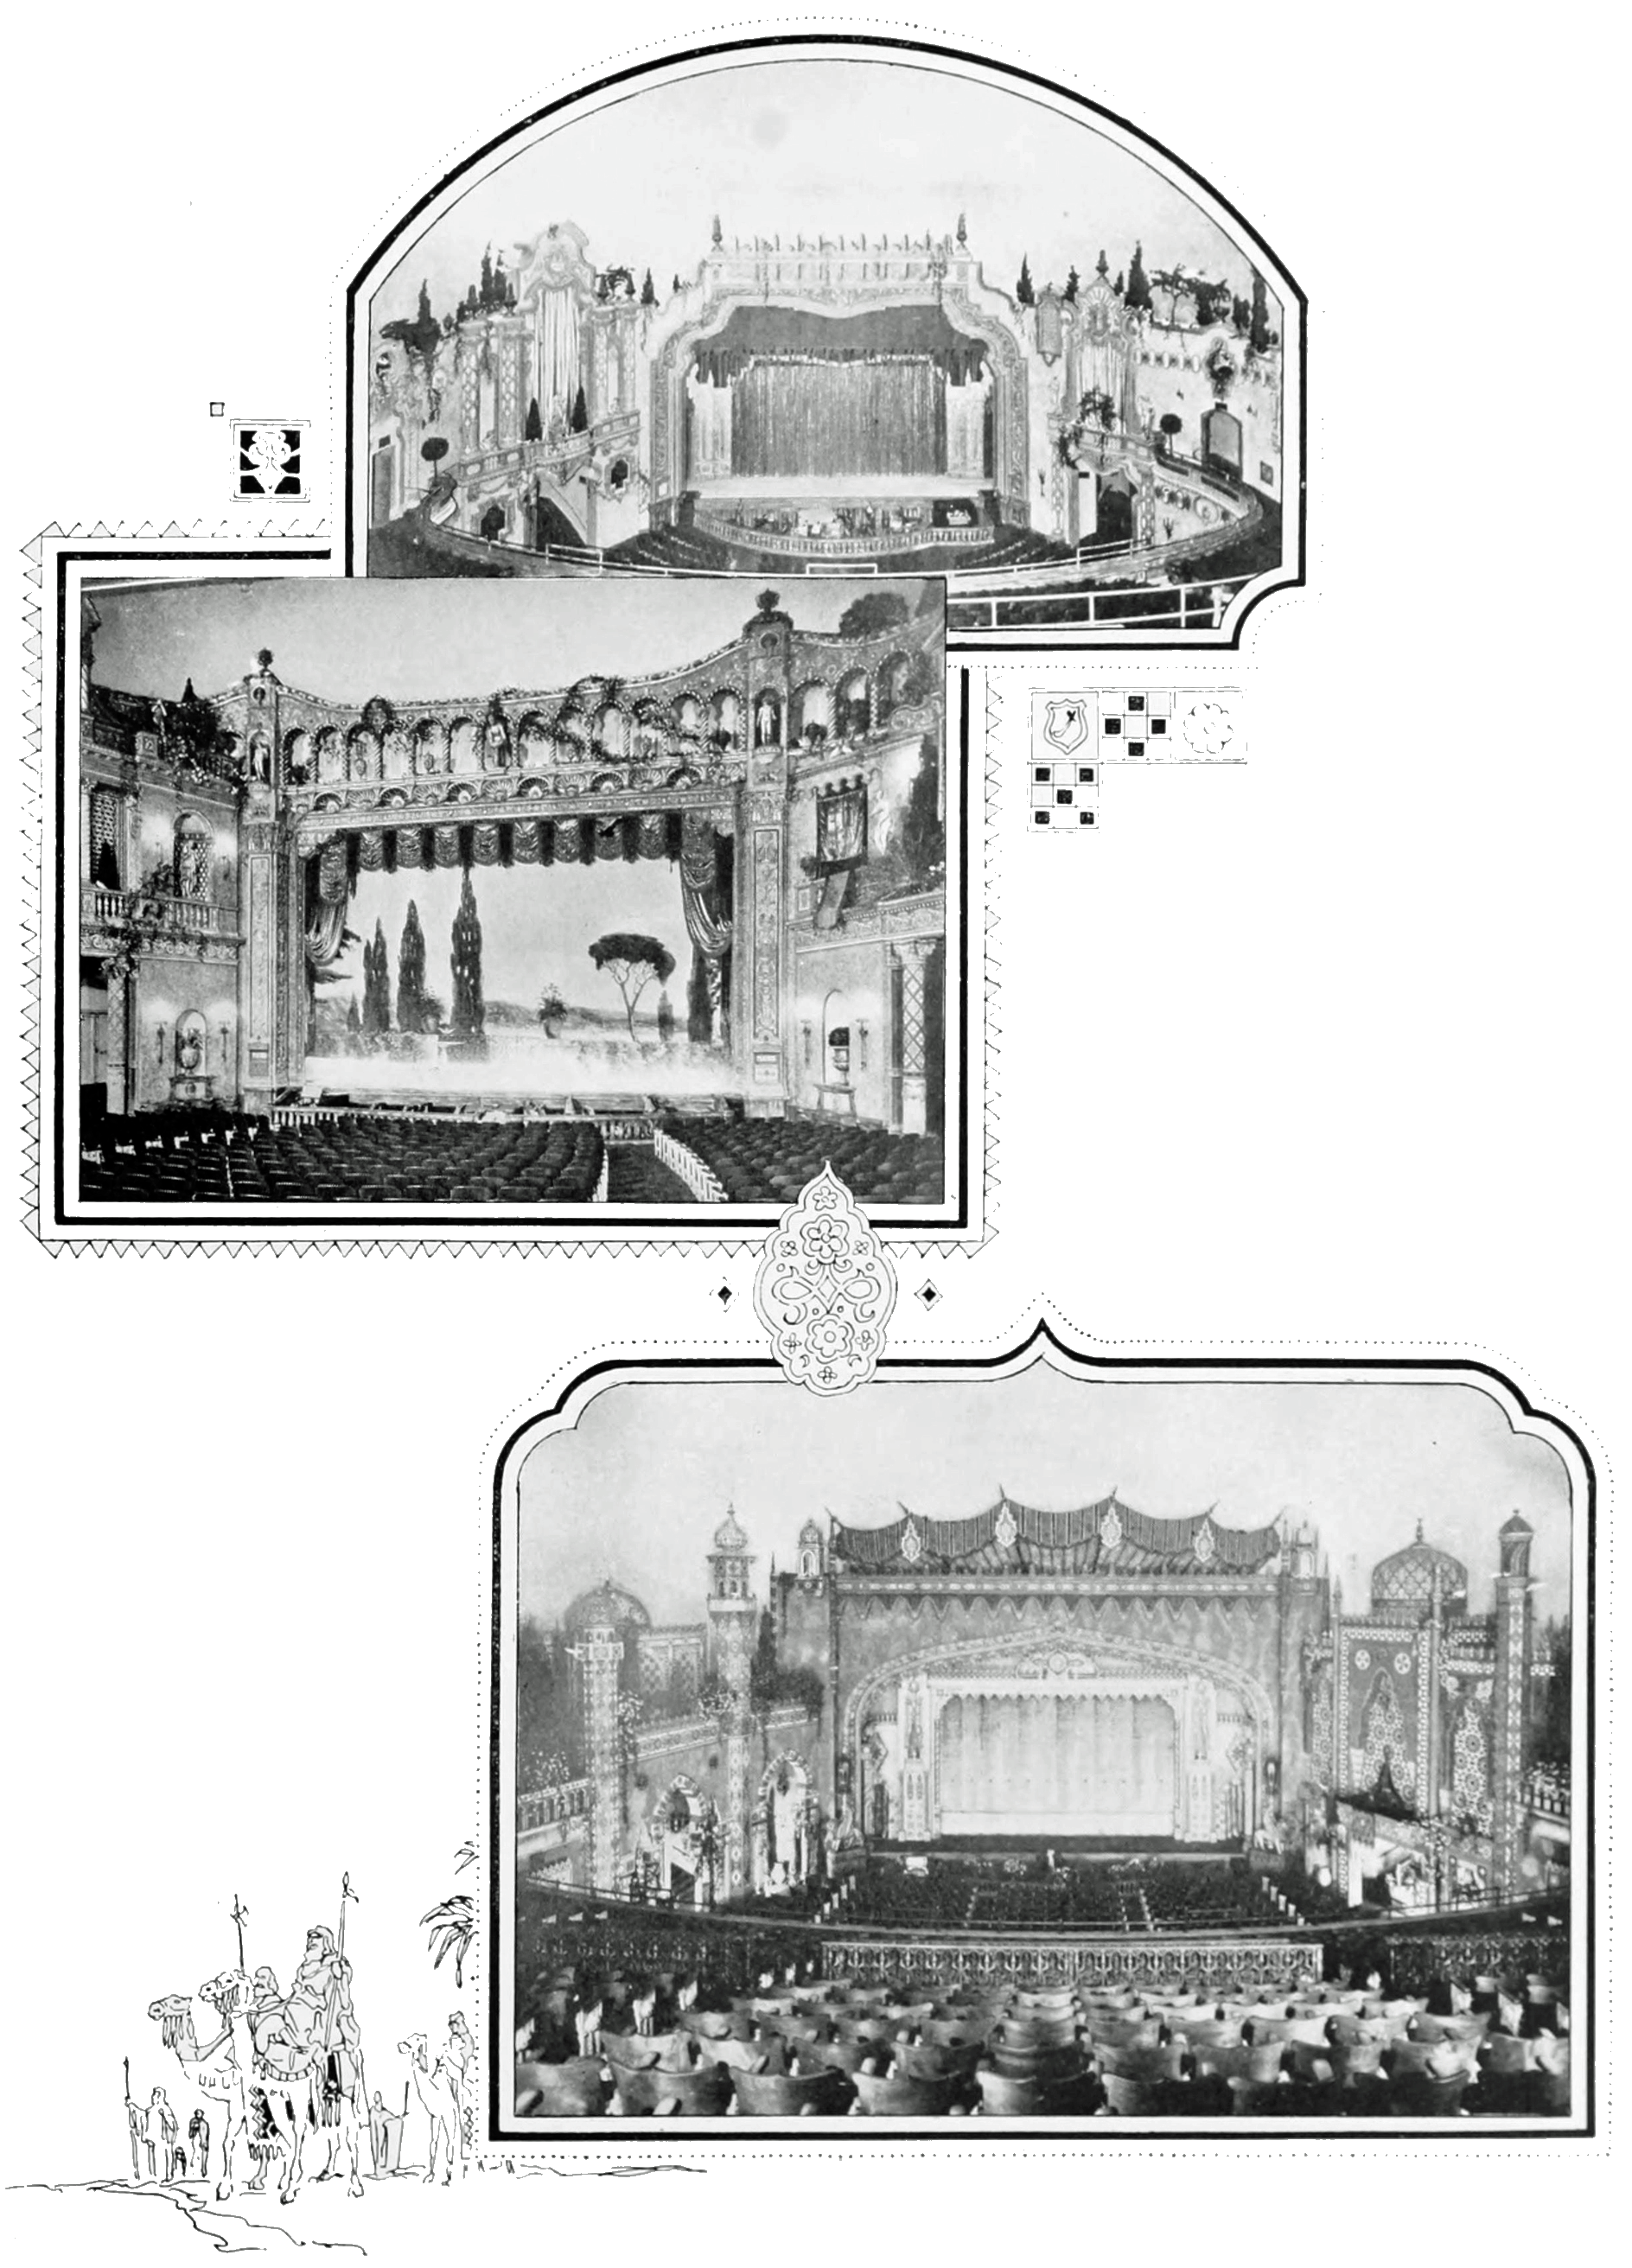 Auditorium Interiors